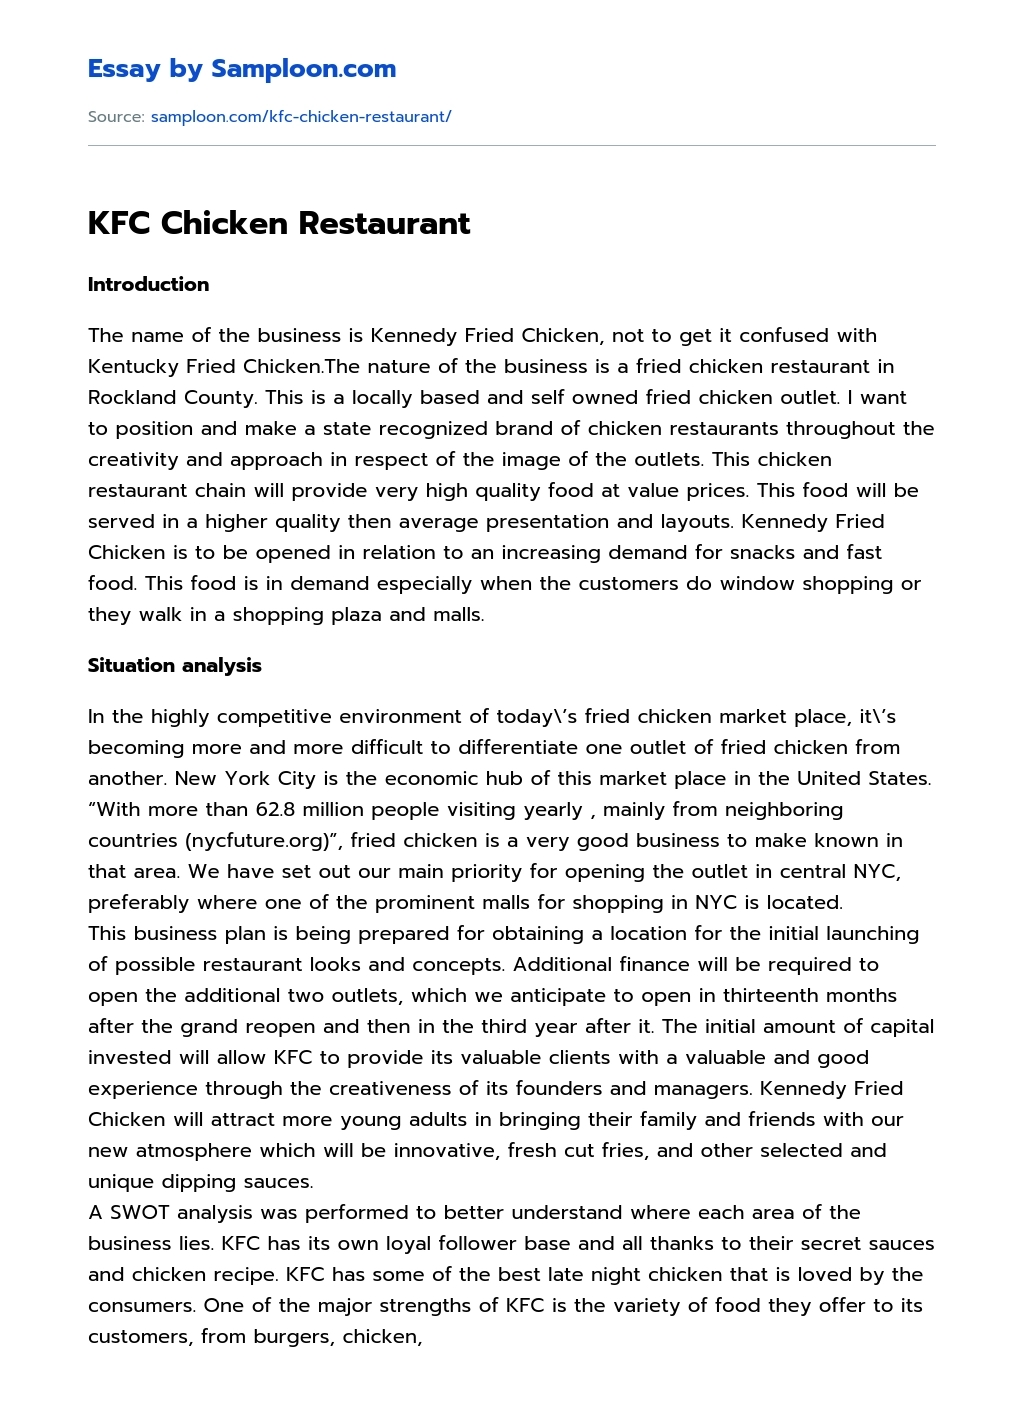 KFC Chicken Restaurant essay